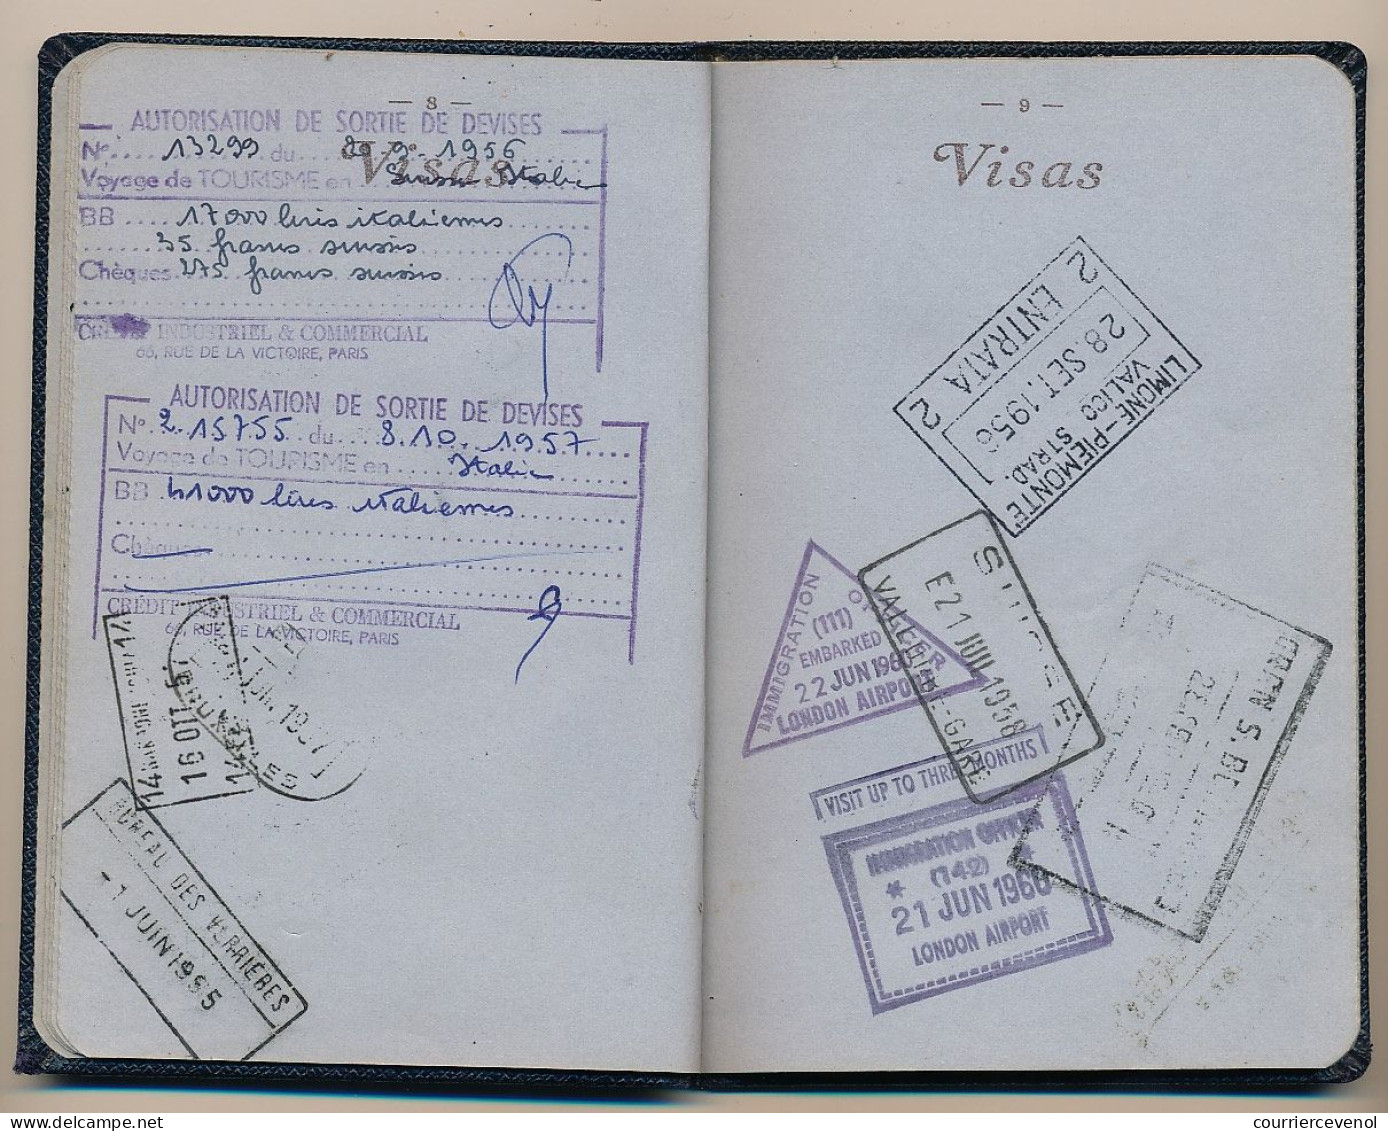 FRANCE - Passeport délivré à Paris - 1955 / 1963 - Fiscaux type Daussy 2000F et 3200F - divers visas européens